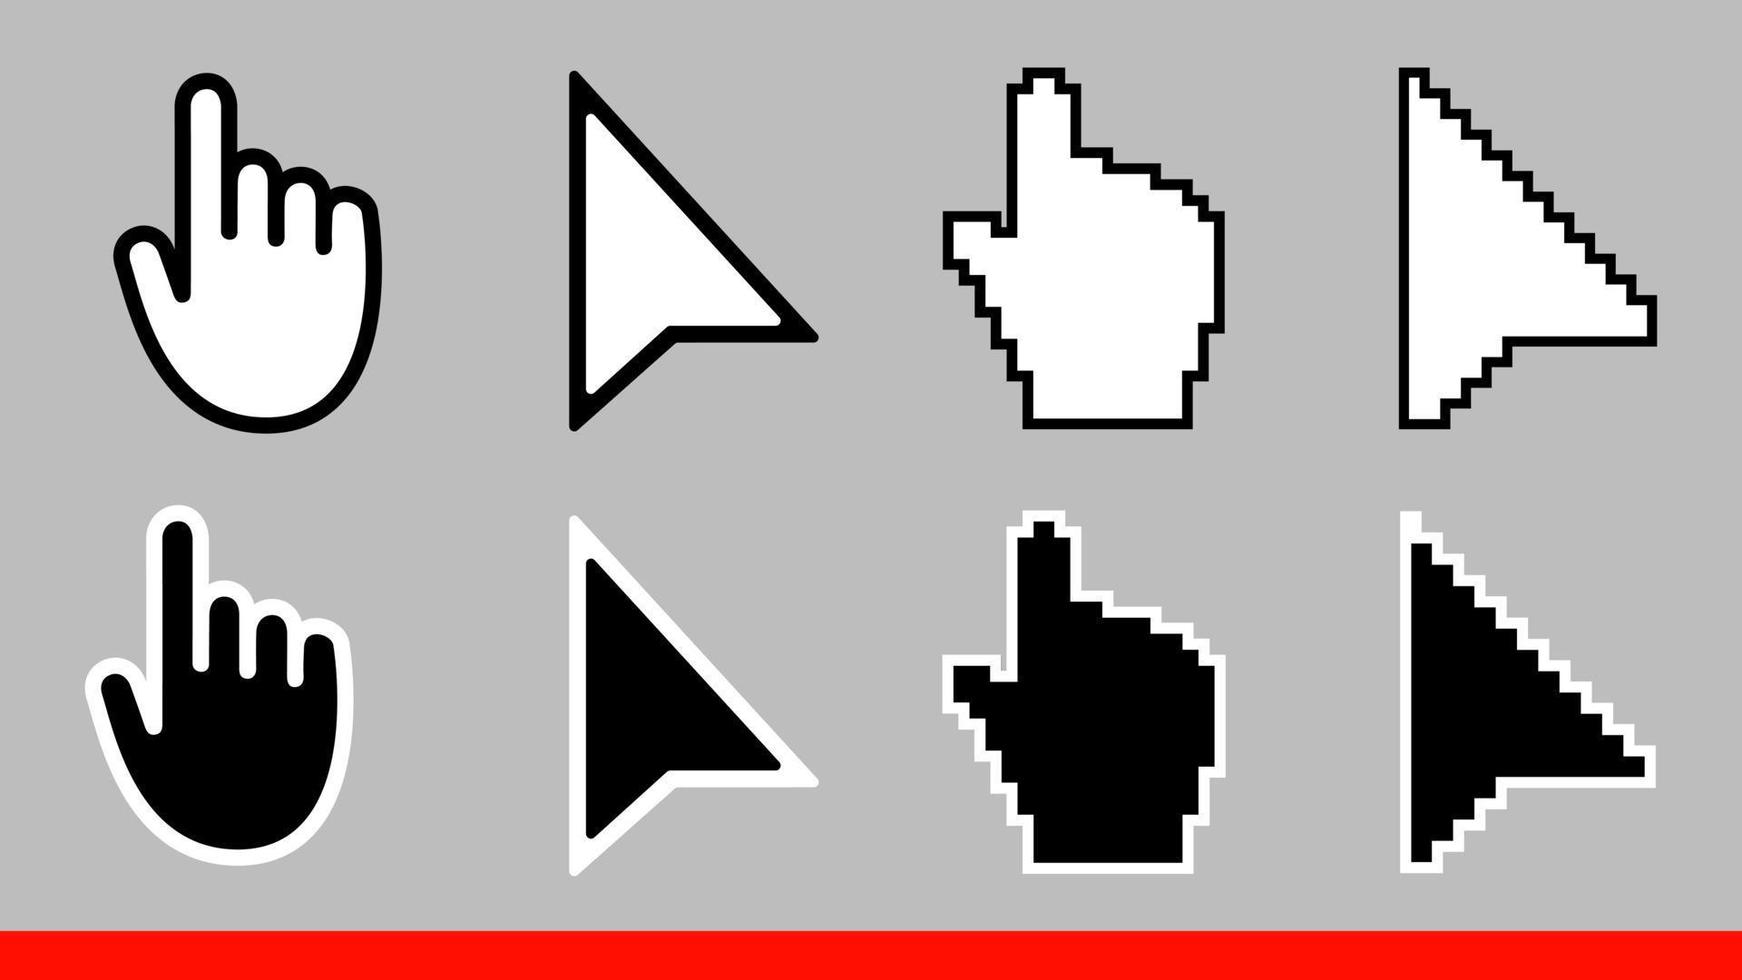 8 svartvita pilen pixel och ingen pixel mus hand markörer ikon vektor illustration set platt stil design isolerad på vit bakgrund.